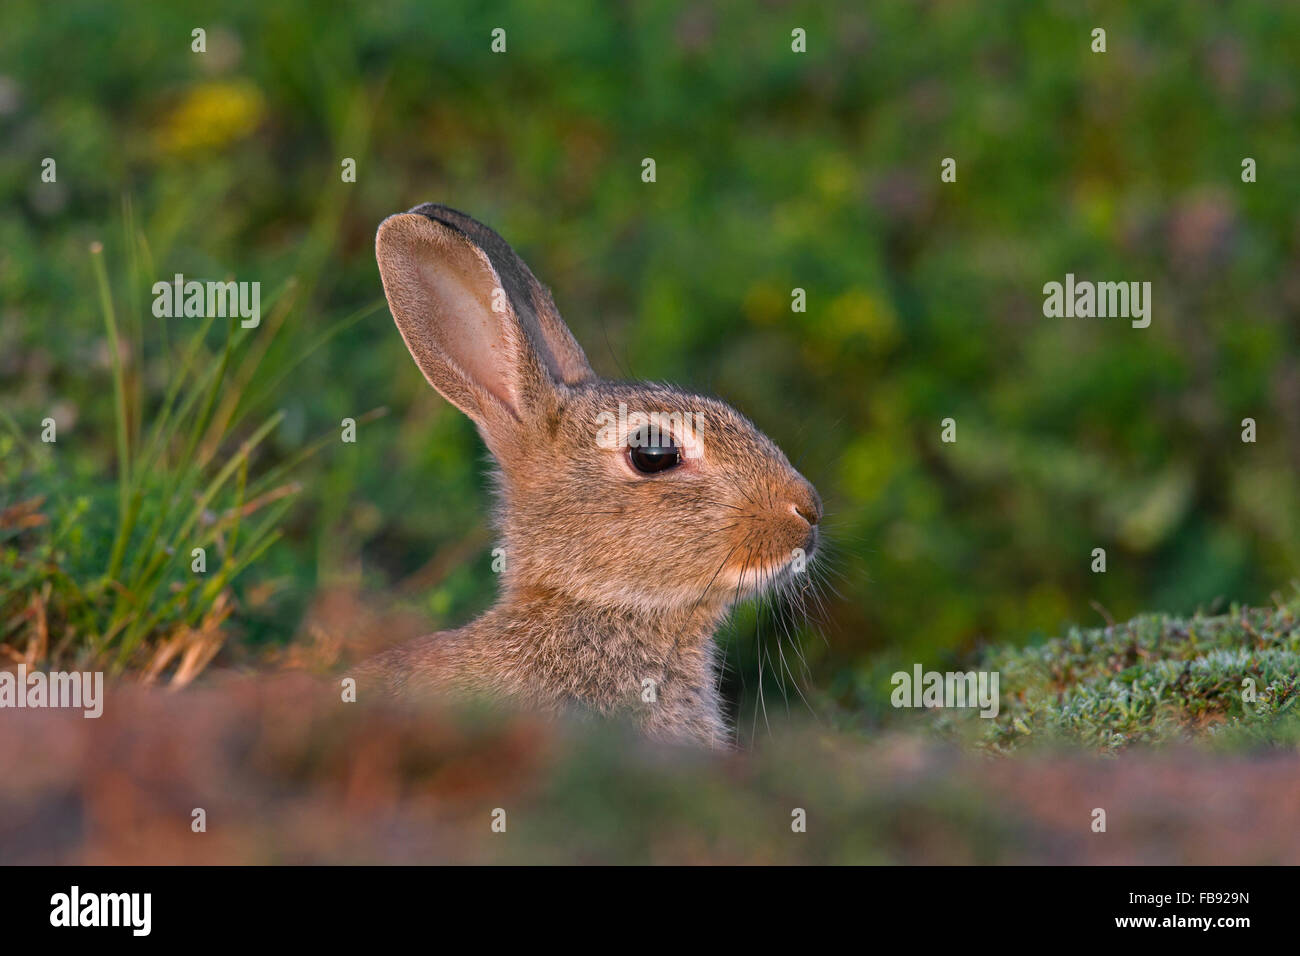 Junge europäische Kaninchen alarmiert / gemeinsame Kaninchen (Oryctolagus Cuniculus) Blick vom Eingang der Höhle / Warren auf Wiese Stockfoto